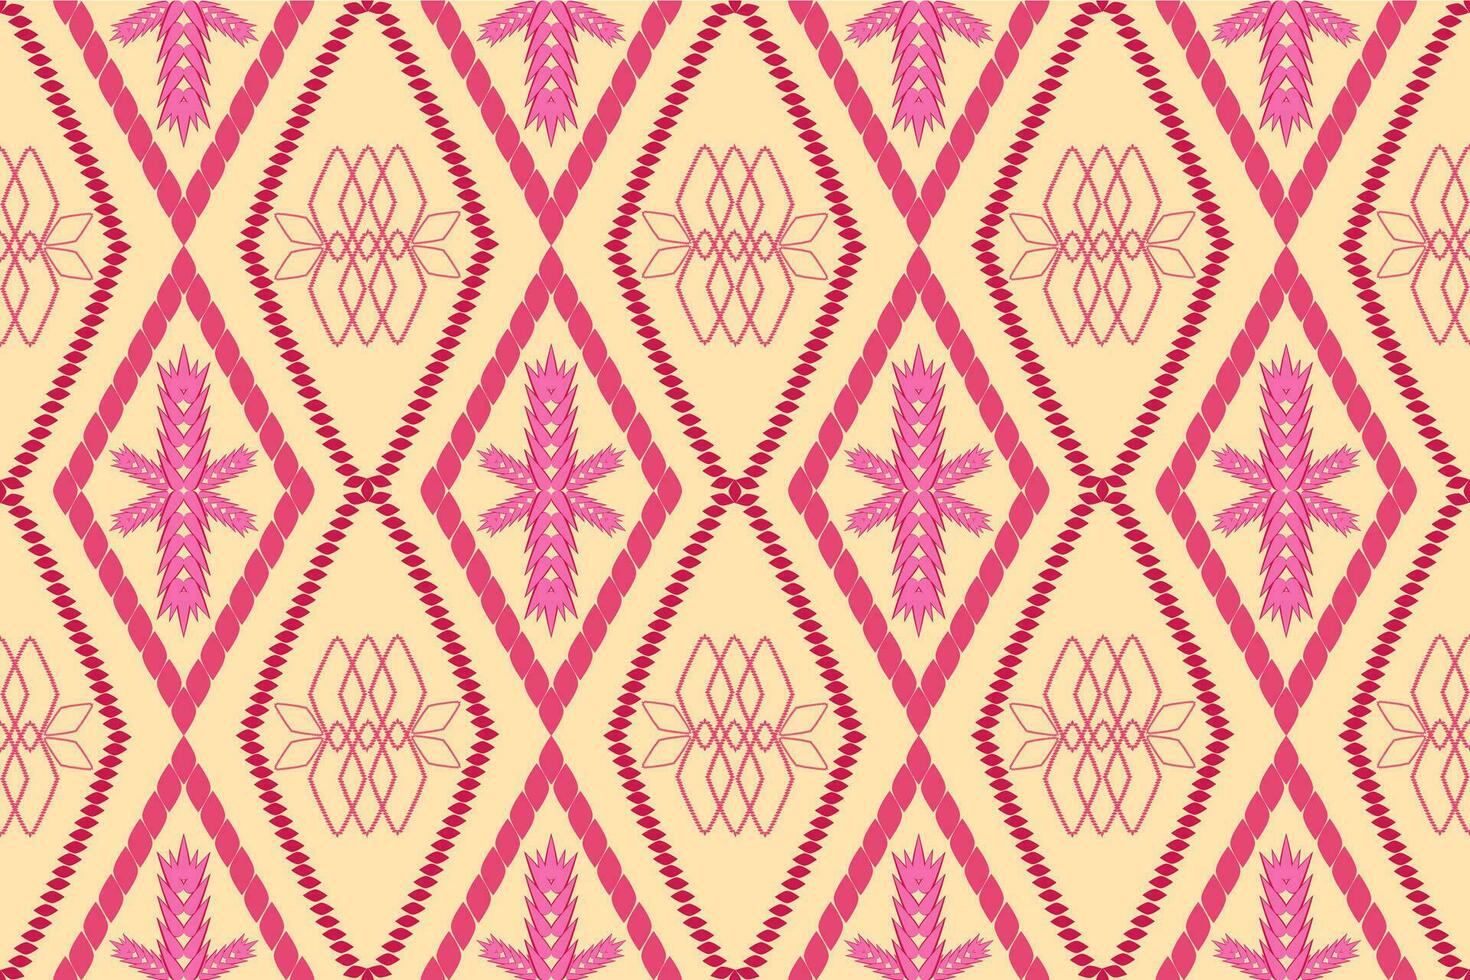 aztekisch geometrisch Muster zum beschwingt Farbe.Damast Stil Muster zum Textil- und Dekoration.ethnisch abstrakt ikat.nahtlos Muster im Stammesangehöriger aztekisch Boho Vektor Design.